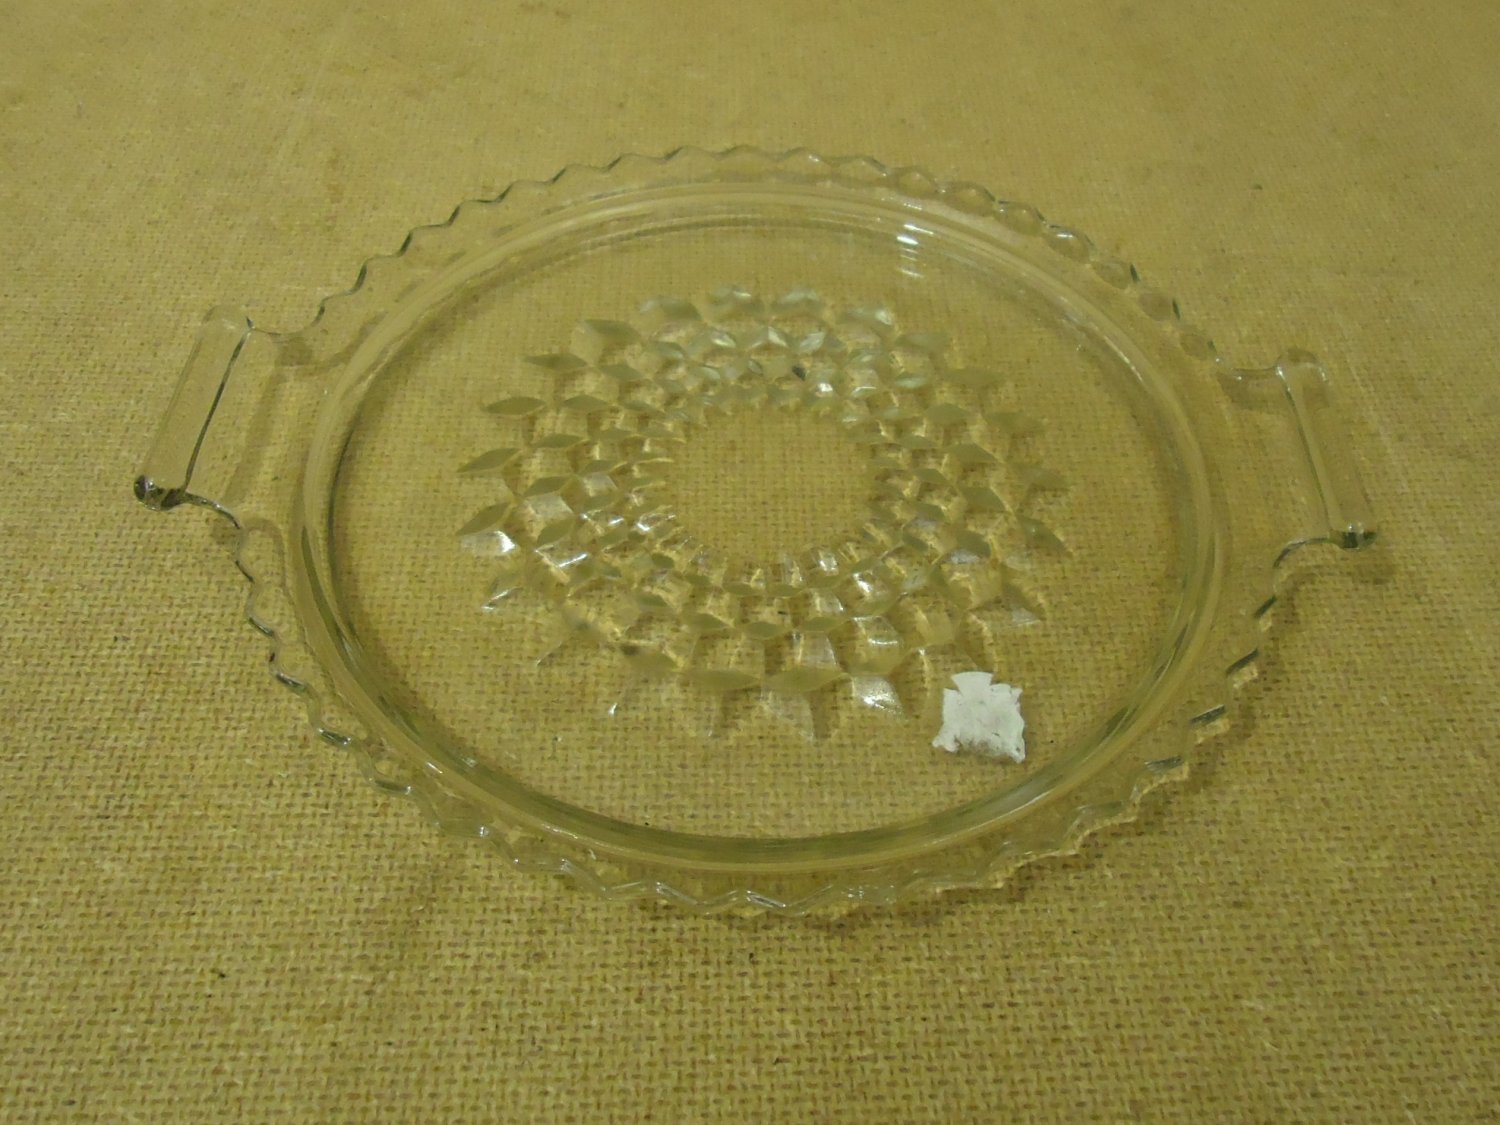 Designer Decorative Glass Dish 7 1/2in Diameter x 1/2in H Clear Glass